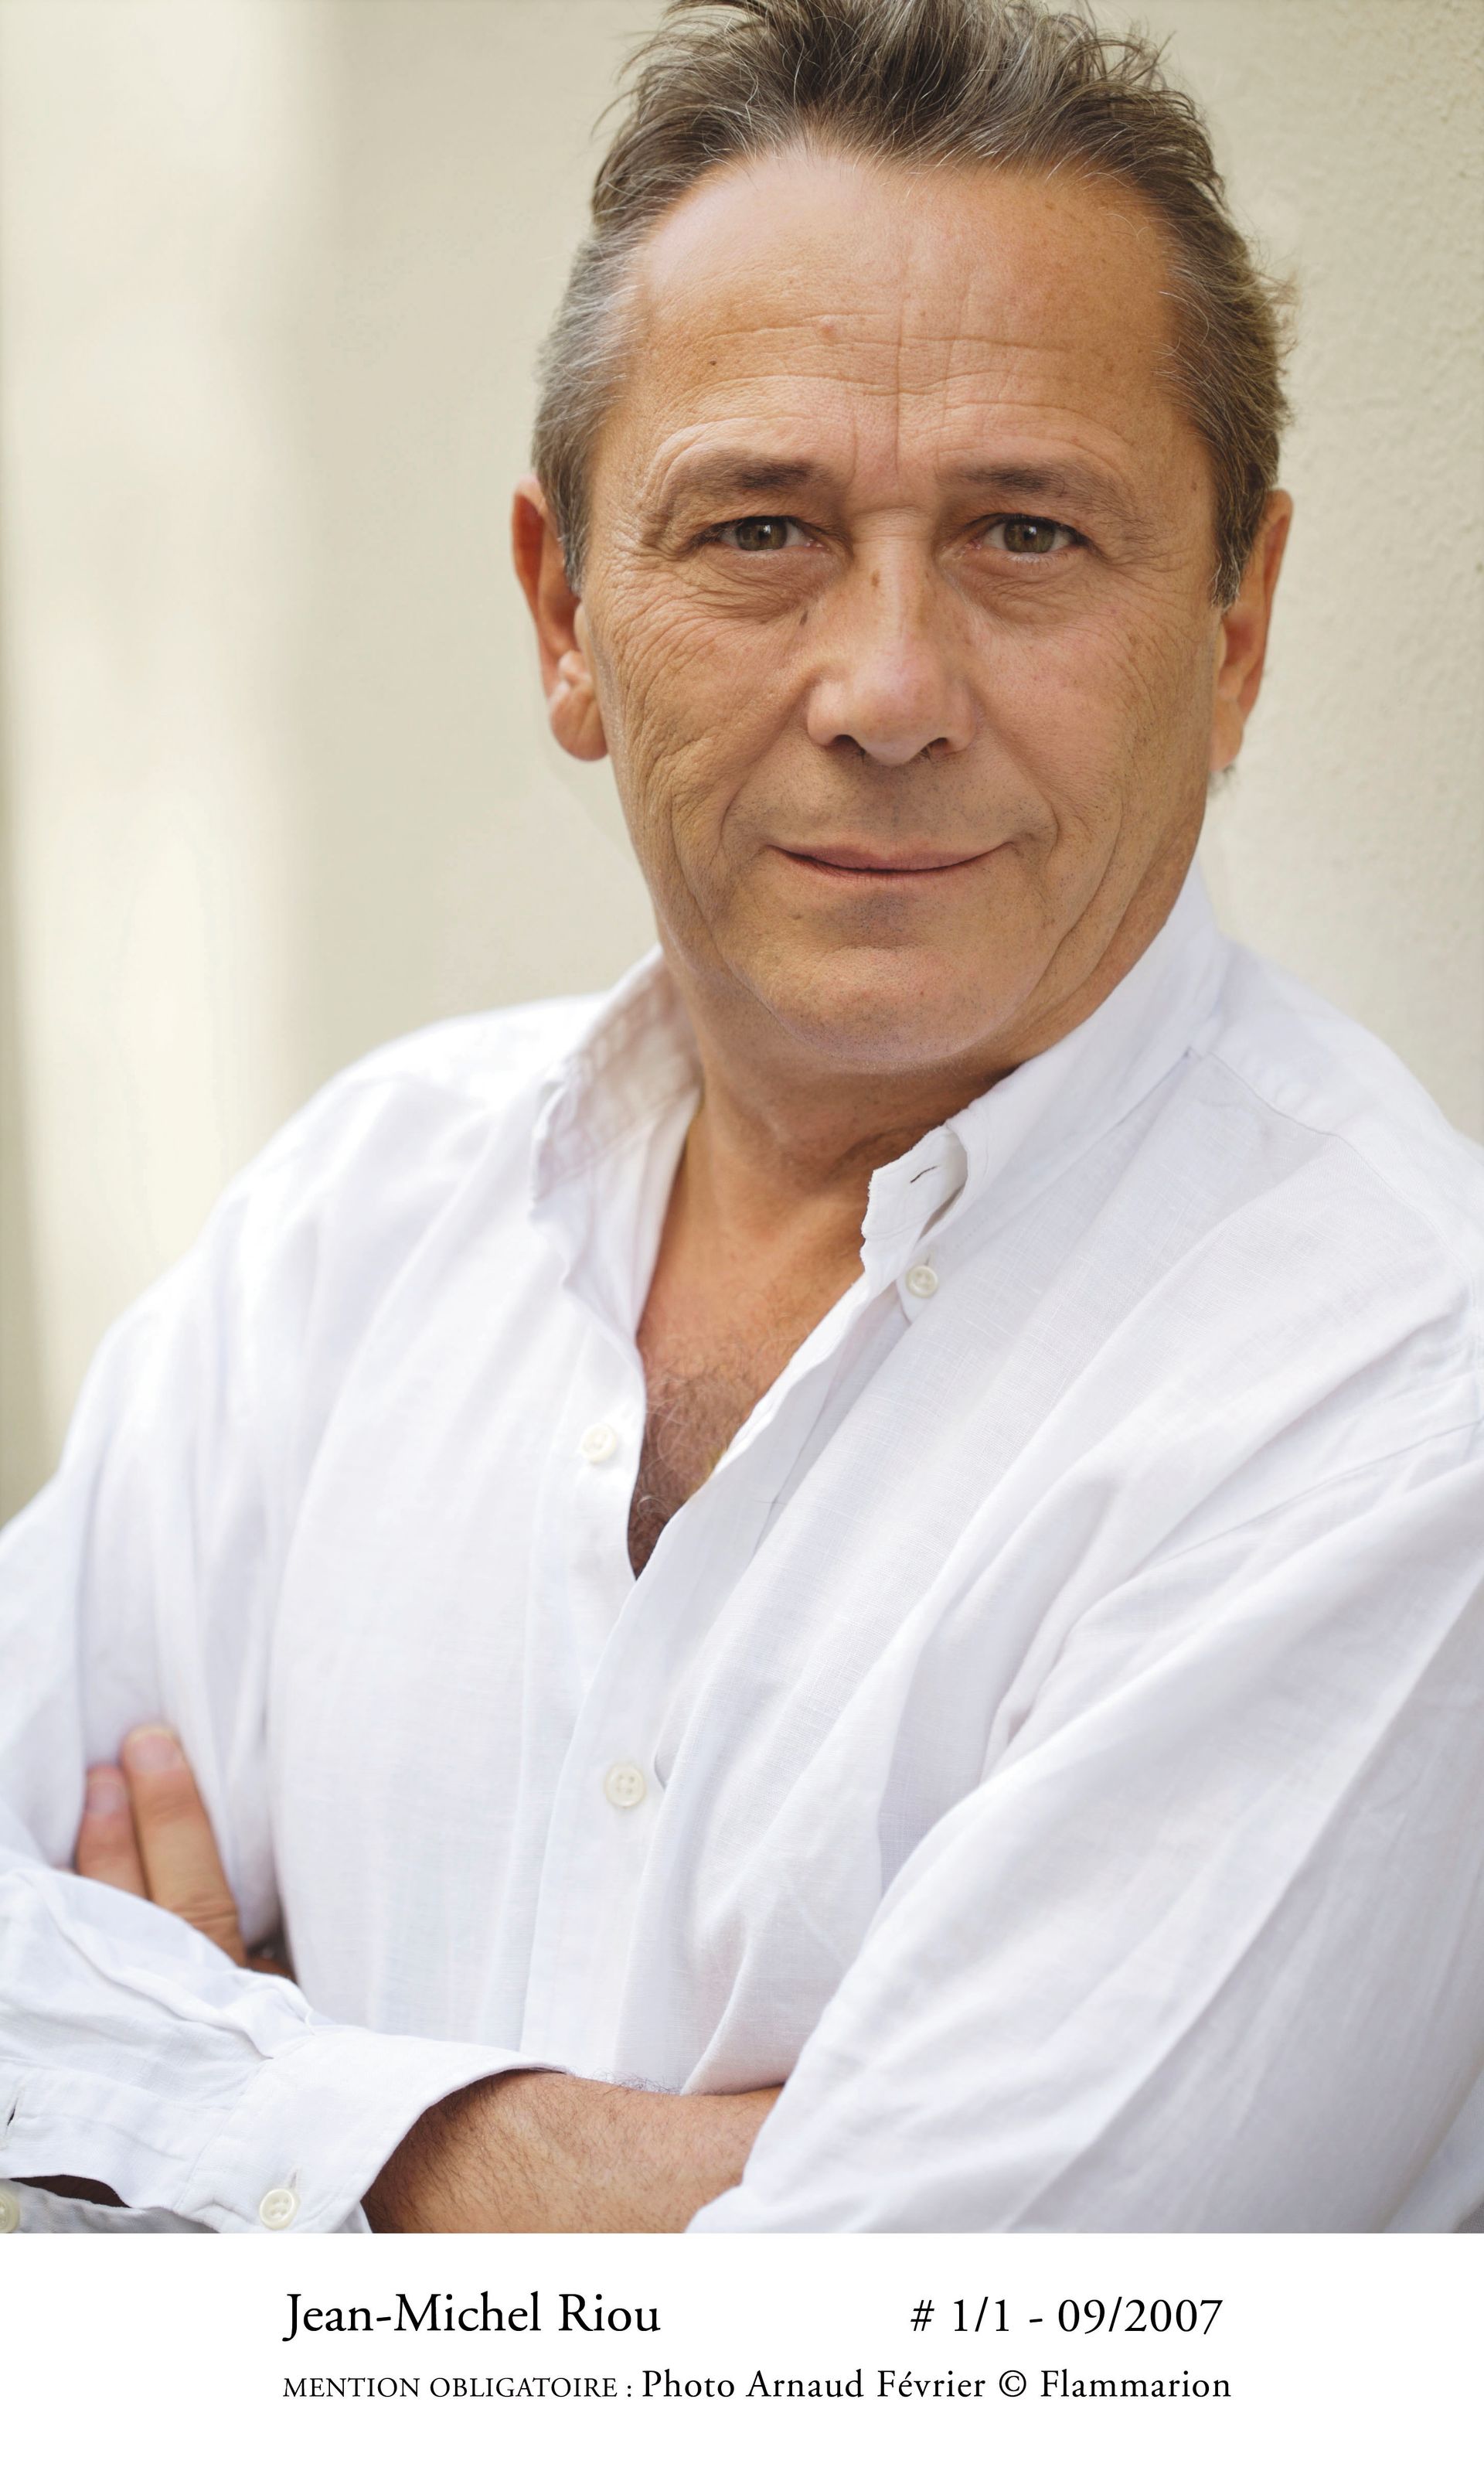 Jean-Michel Riou